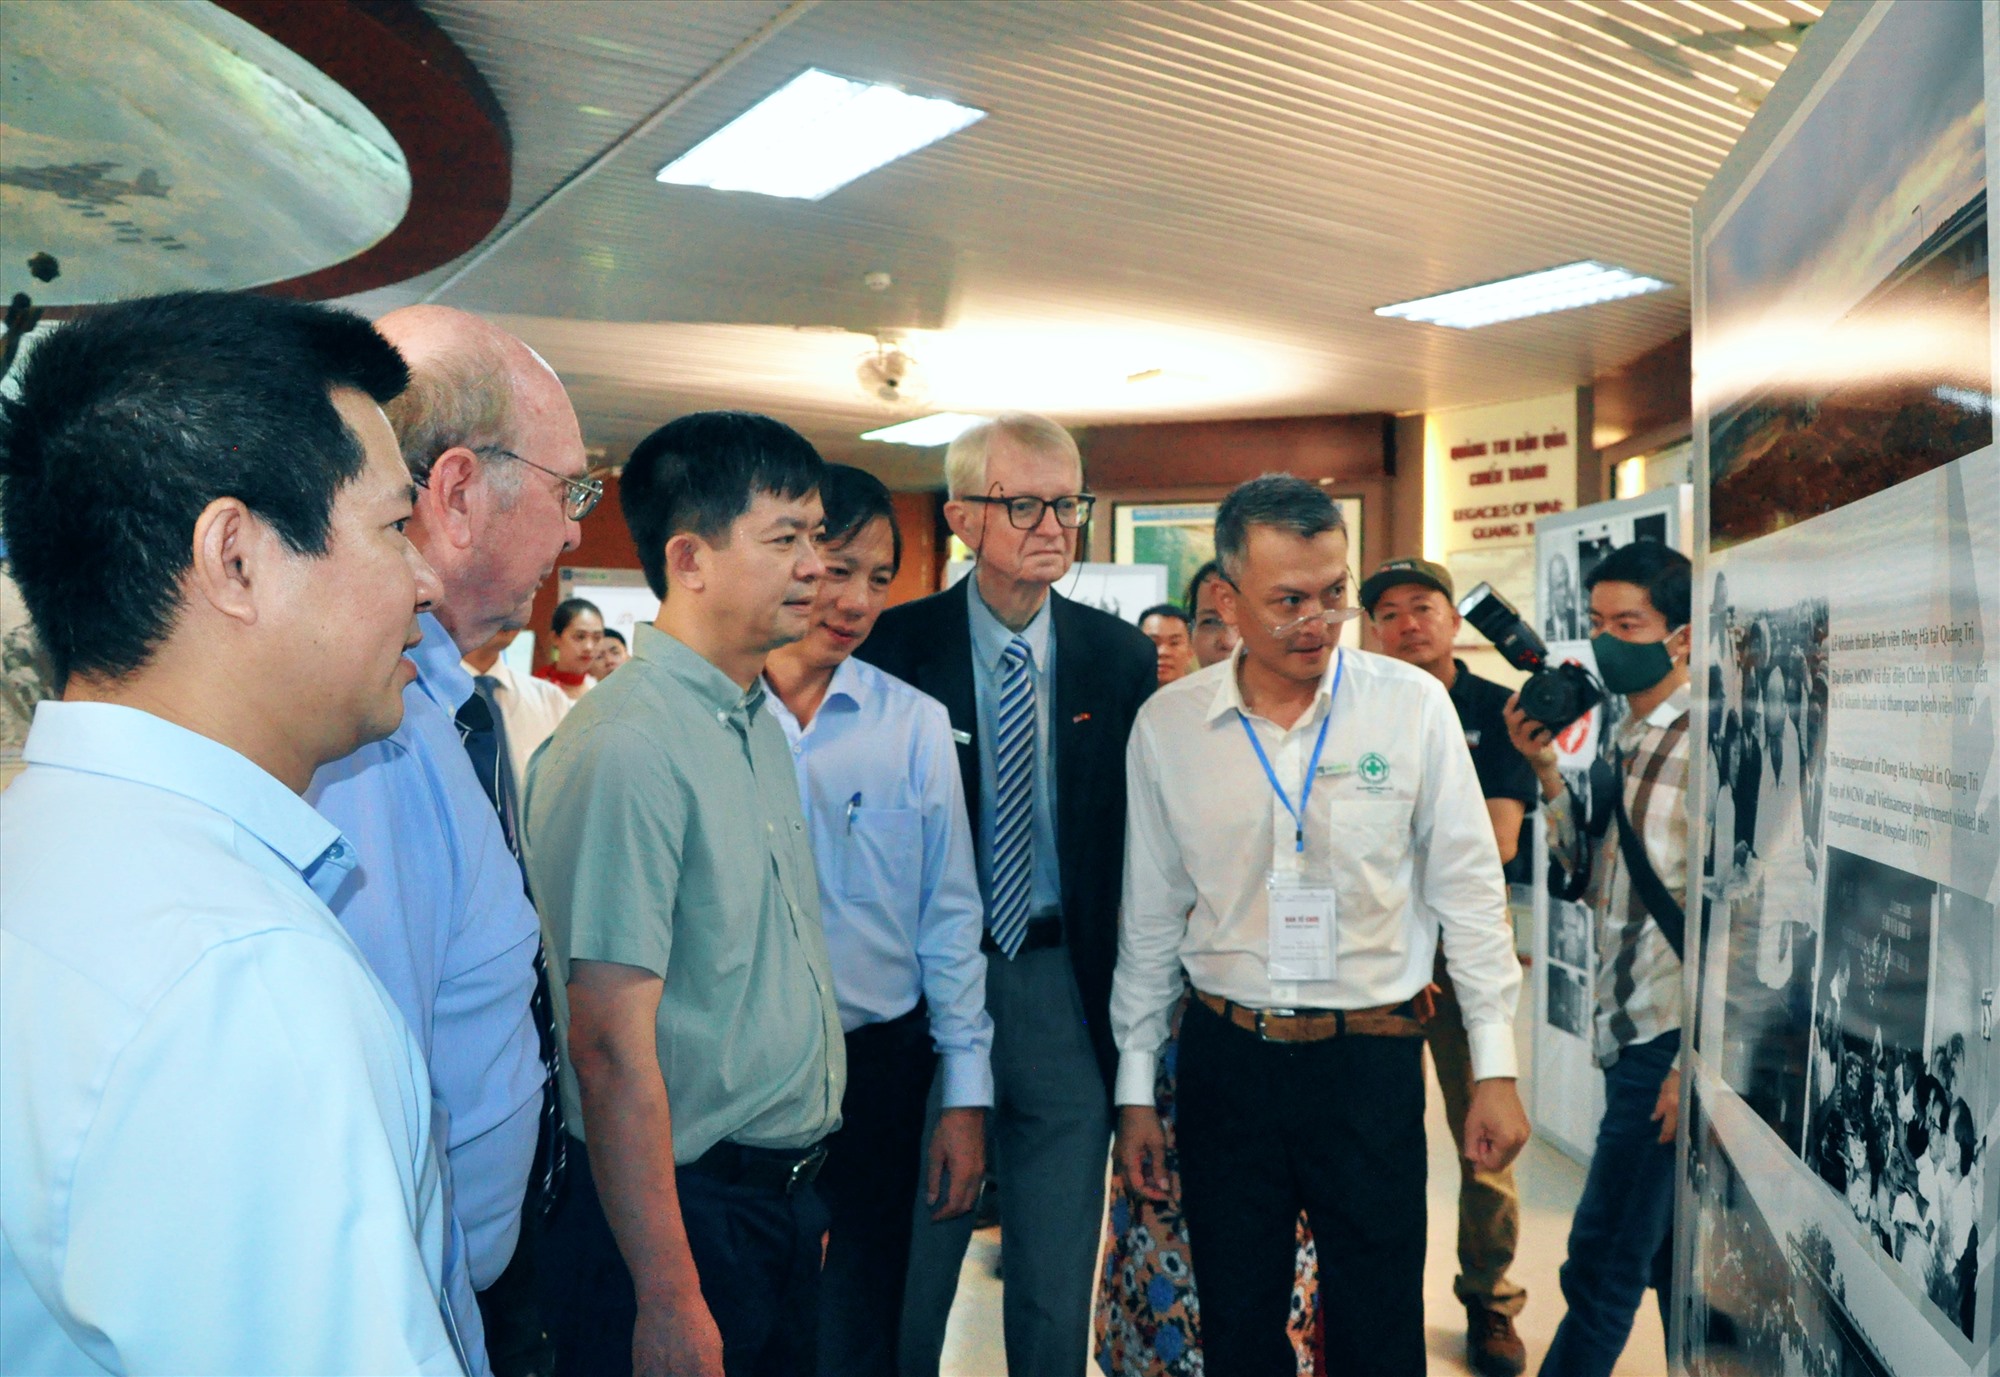 Bí thư Tỉnh ủy Lê Quang Tùng, Phó Chủ tịch UBND tỉnh Hoàng Nam và đại diện các tổ chức, dự án xem những bức ảnh tại triển lãm “Quảng Trị - Điểm đến của ký ức” - Ảnh: Q.H